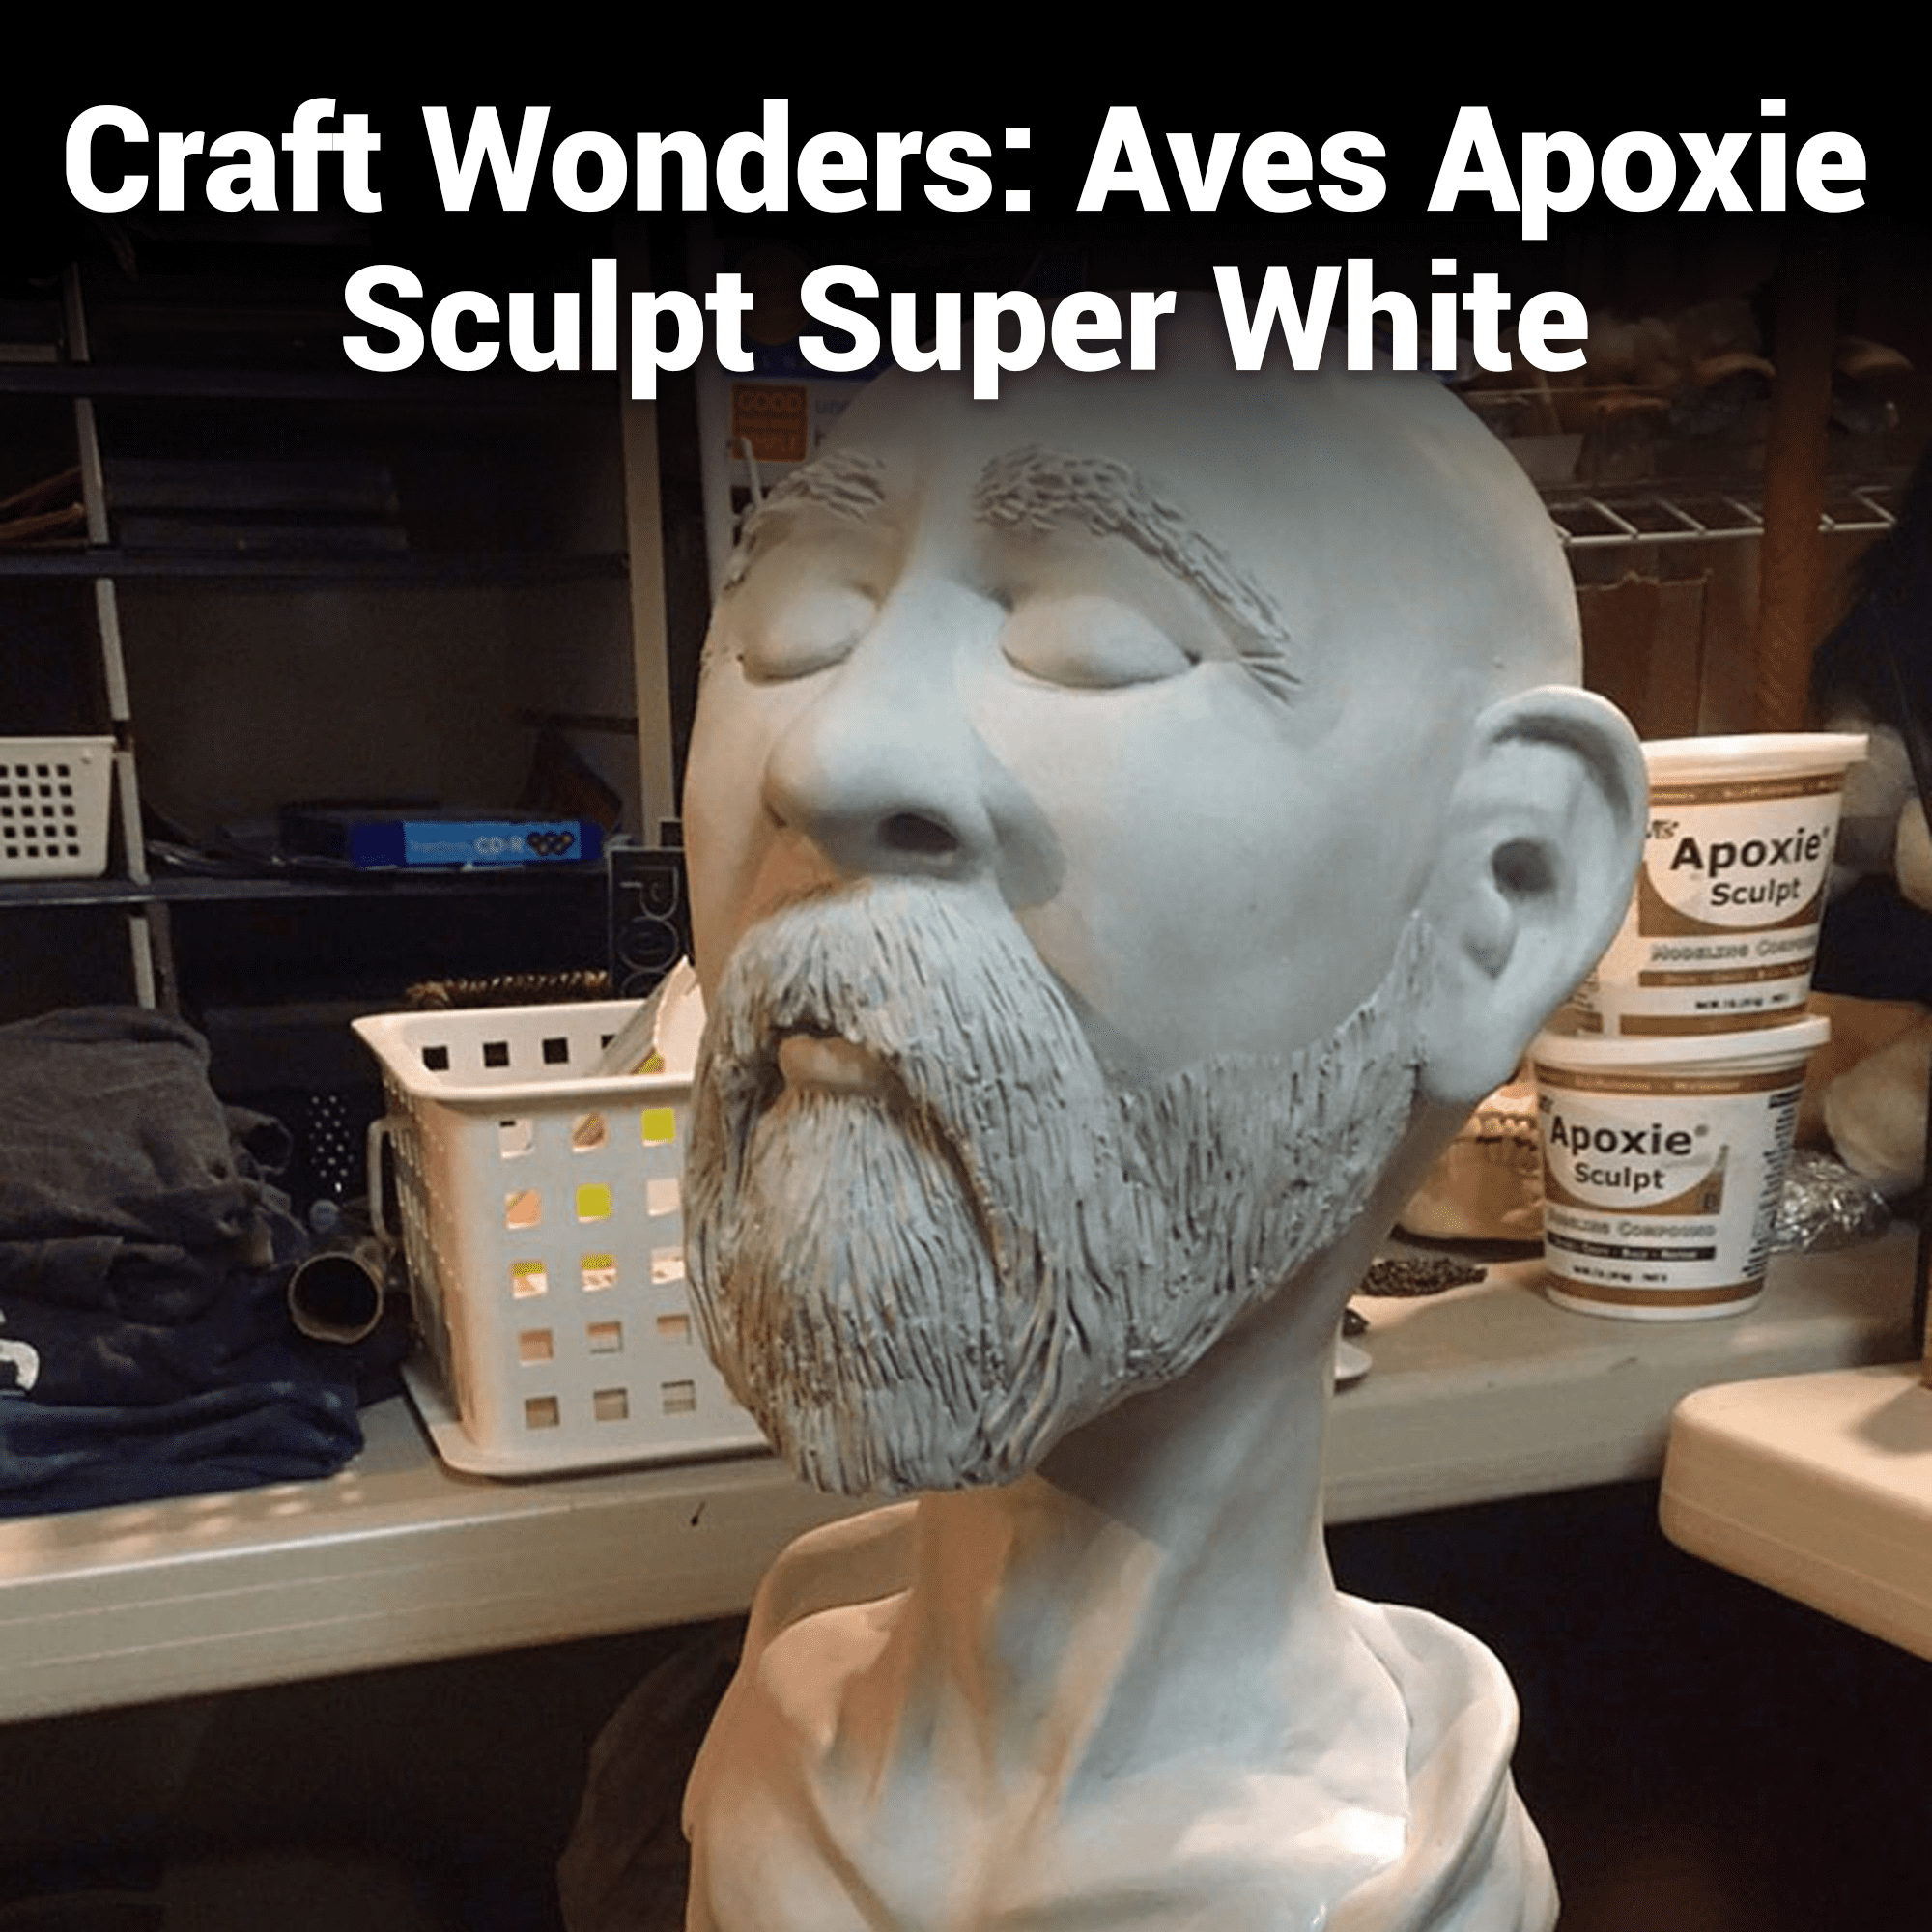 Aves Apoxie Sculpt Super White - 2 Part Modeling Compound (A & B